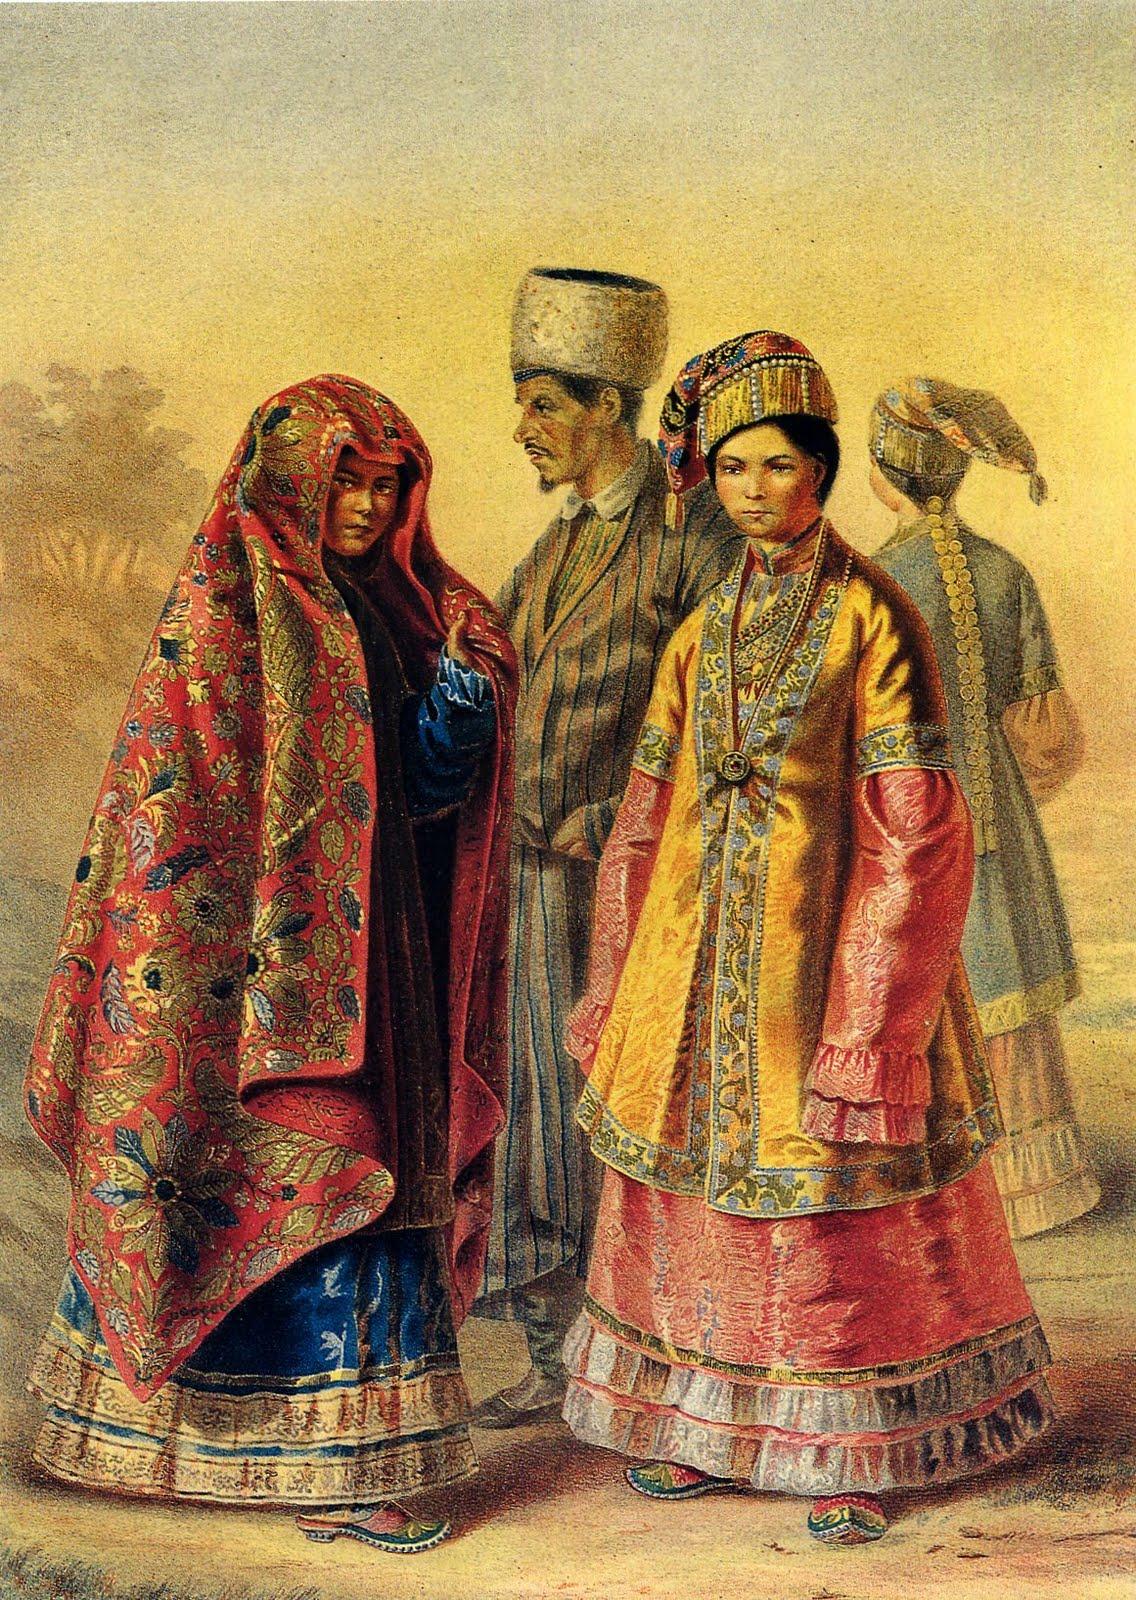 Национальная одежда татарок